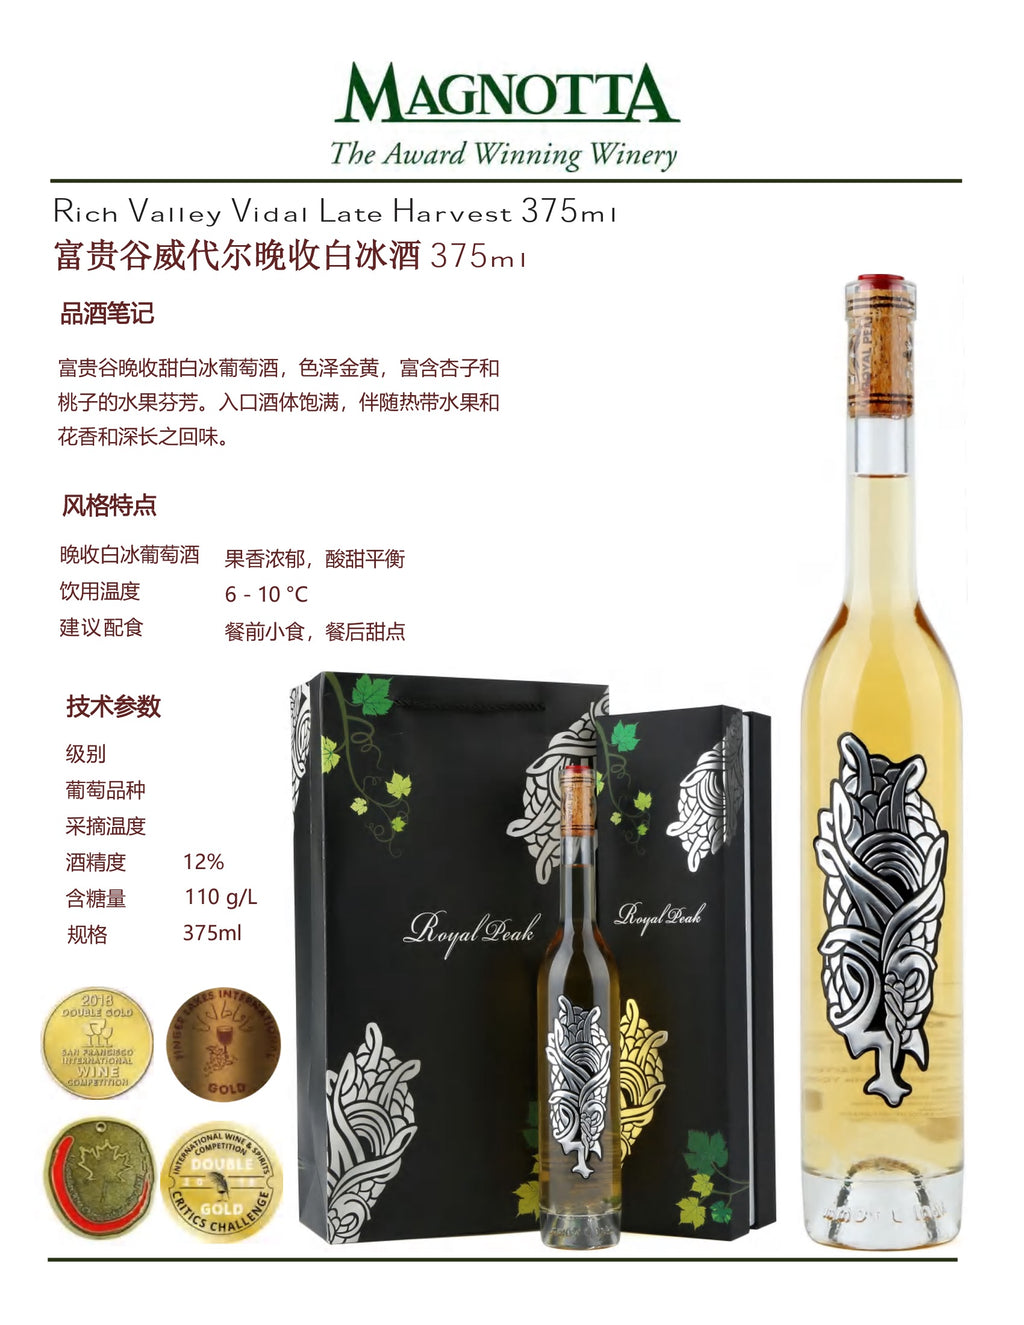 中国邮寄:酒:加拿大Magnotta酒庄:礼盒富贵谷威代尔晚收白冰酒 375毫升/ Rich Valley Vidal Late Harvest 375ml (Order to China)